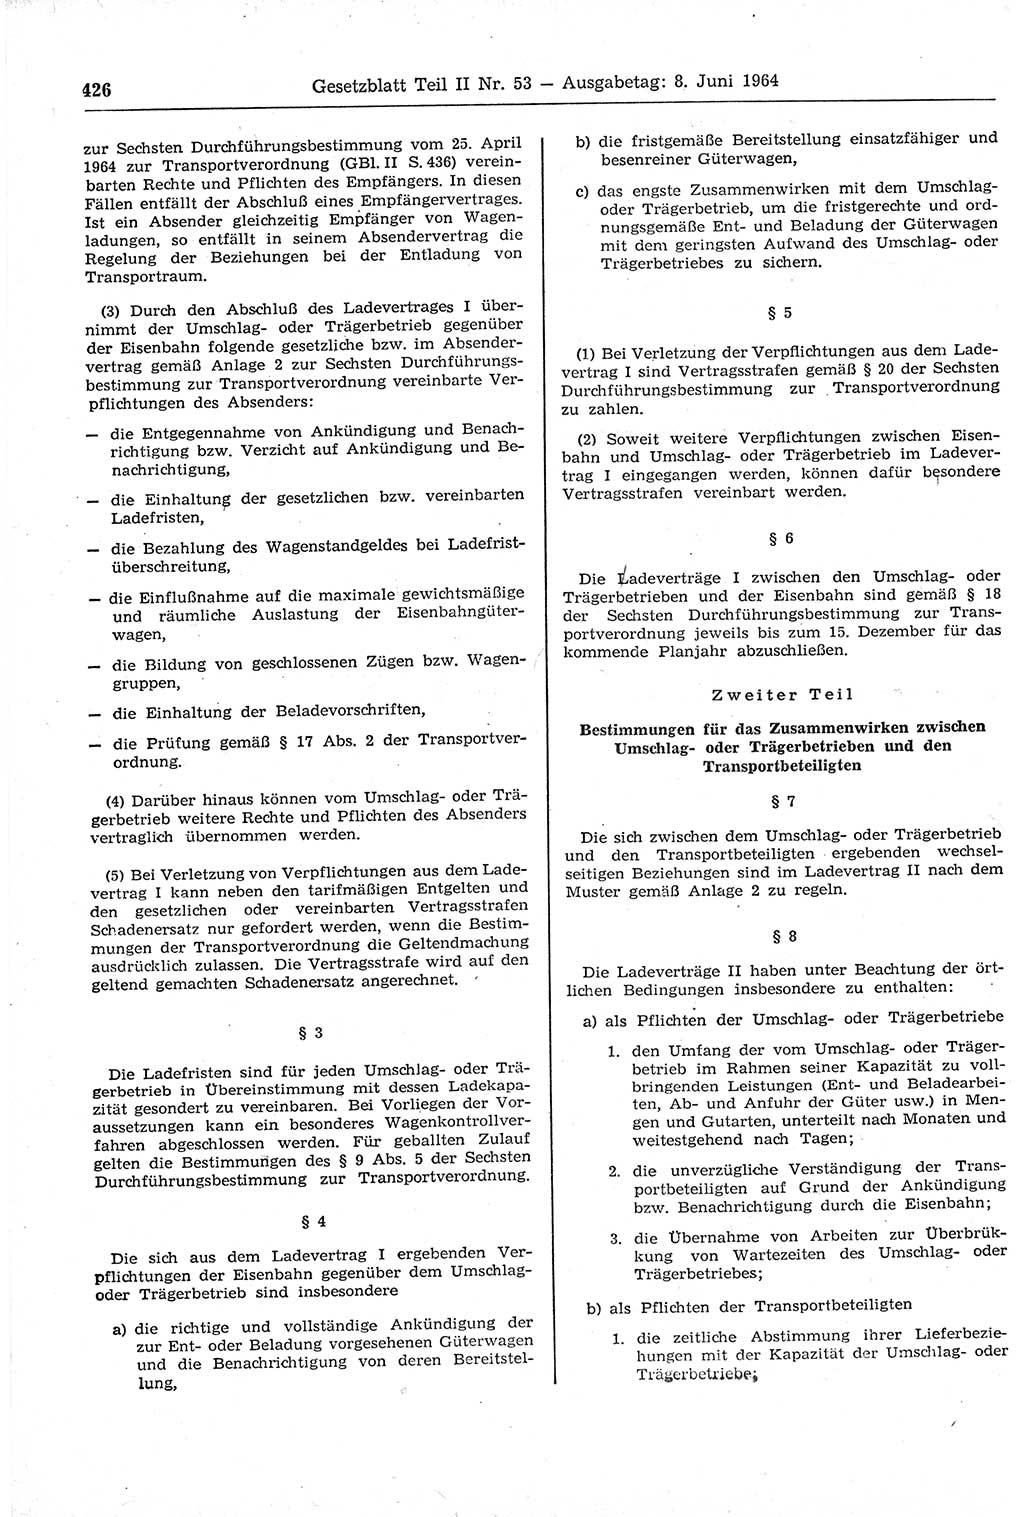 Gesetzblatt (GBl.) der Deutschen Demokratischen Republik (DDR) Teil ⅠⅠ 1964, Seite 426 (GBl. DDR ⅠⅠ 1964, S. 426)